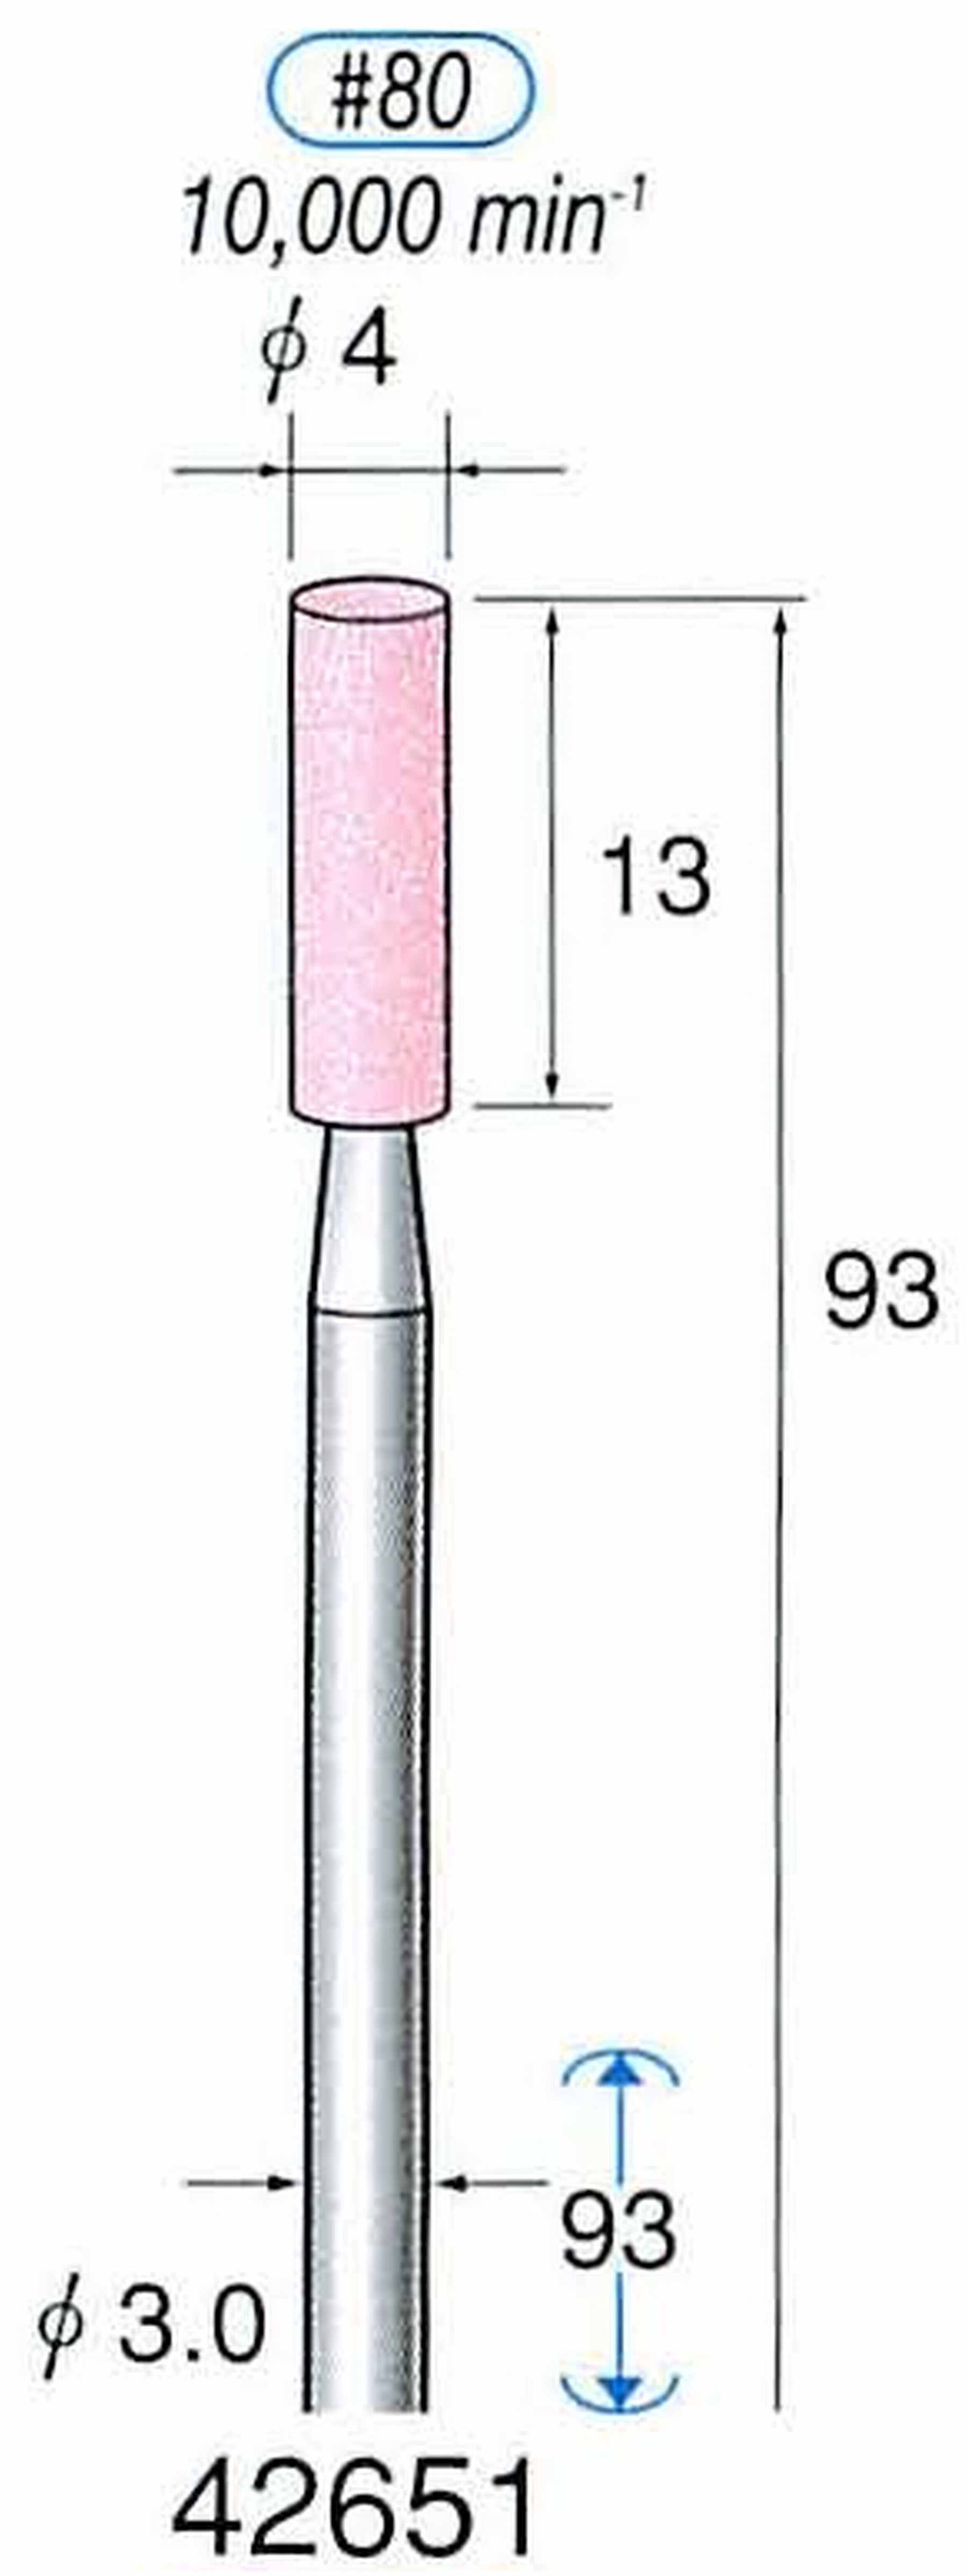 ナカニシ/NAKANISHI 軸付砥石(WA砥粒) 一般研削用(ロングシャフト80mmタイプ) 軸径(シャンク) φ3.0mm 42651